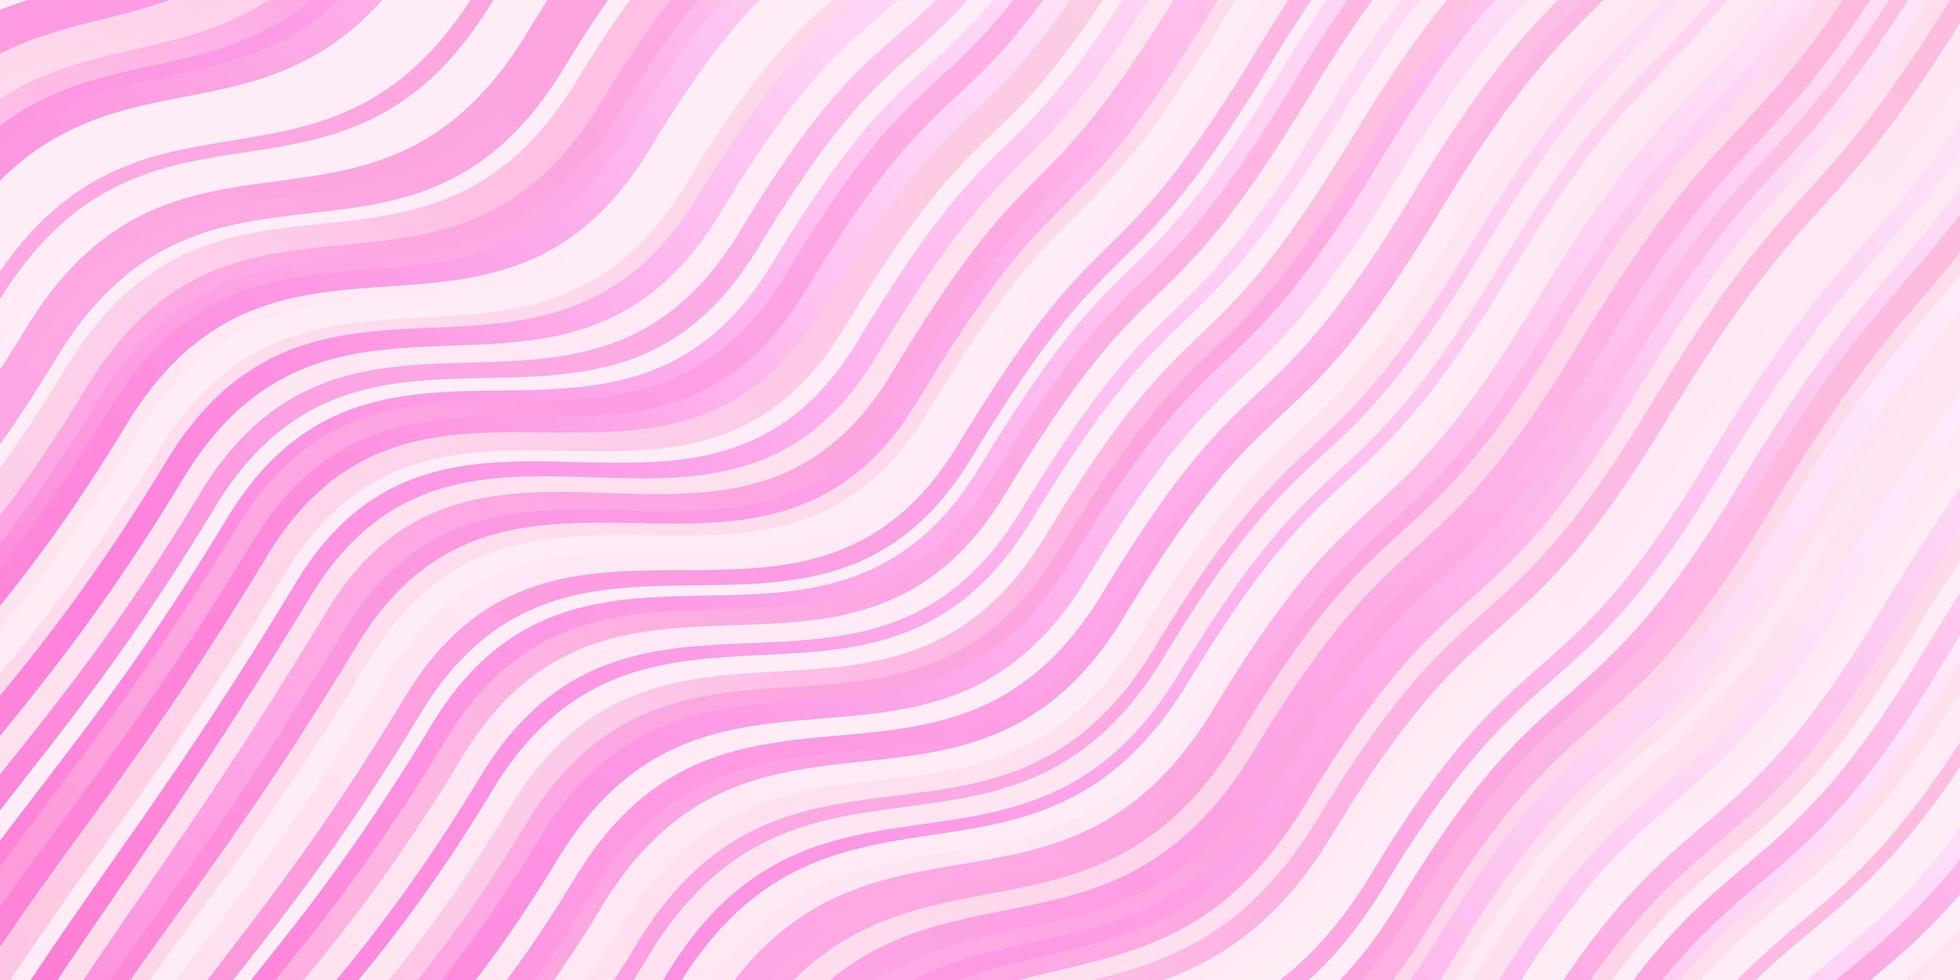 hellrosa Hintergrund mit gebogenen Linien. vektor